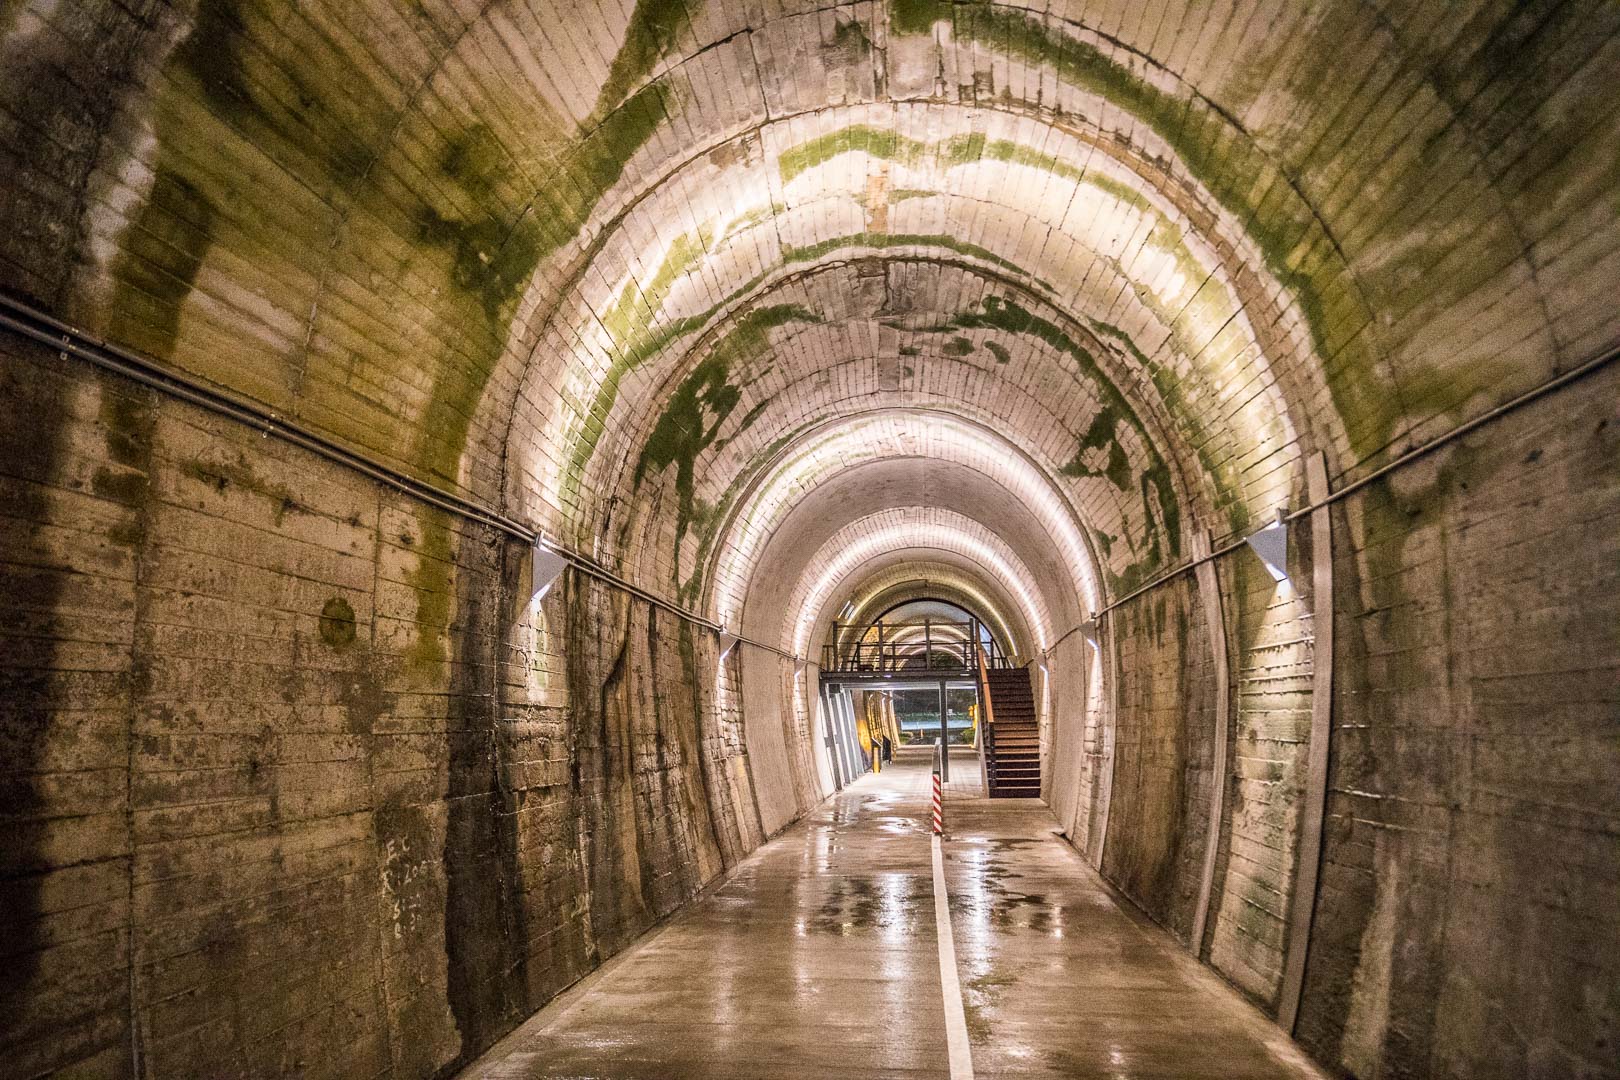 宜蘭3D海底彩繪隧道,宜蘭景點,蘇澳景點,蘇東隧道3D海底彩繪隧道,蘇東隧道,3D海底彩繪隧道,宜蘭蘇東隧道3